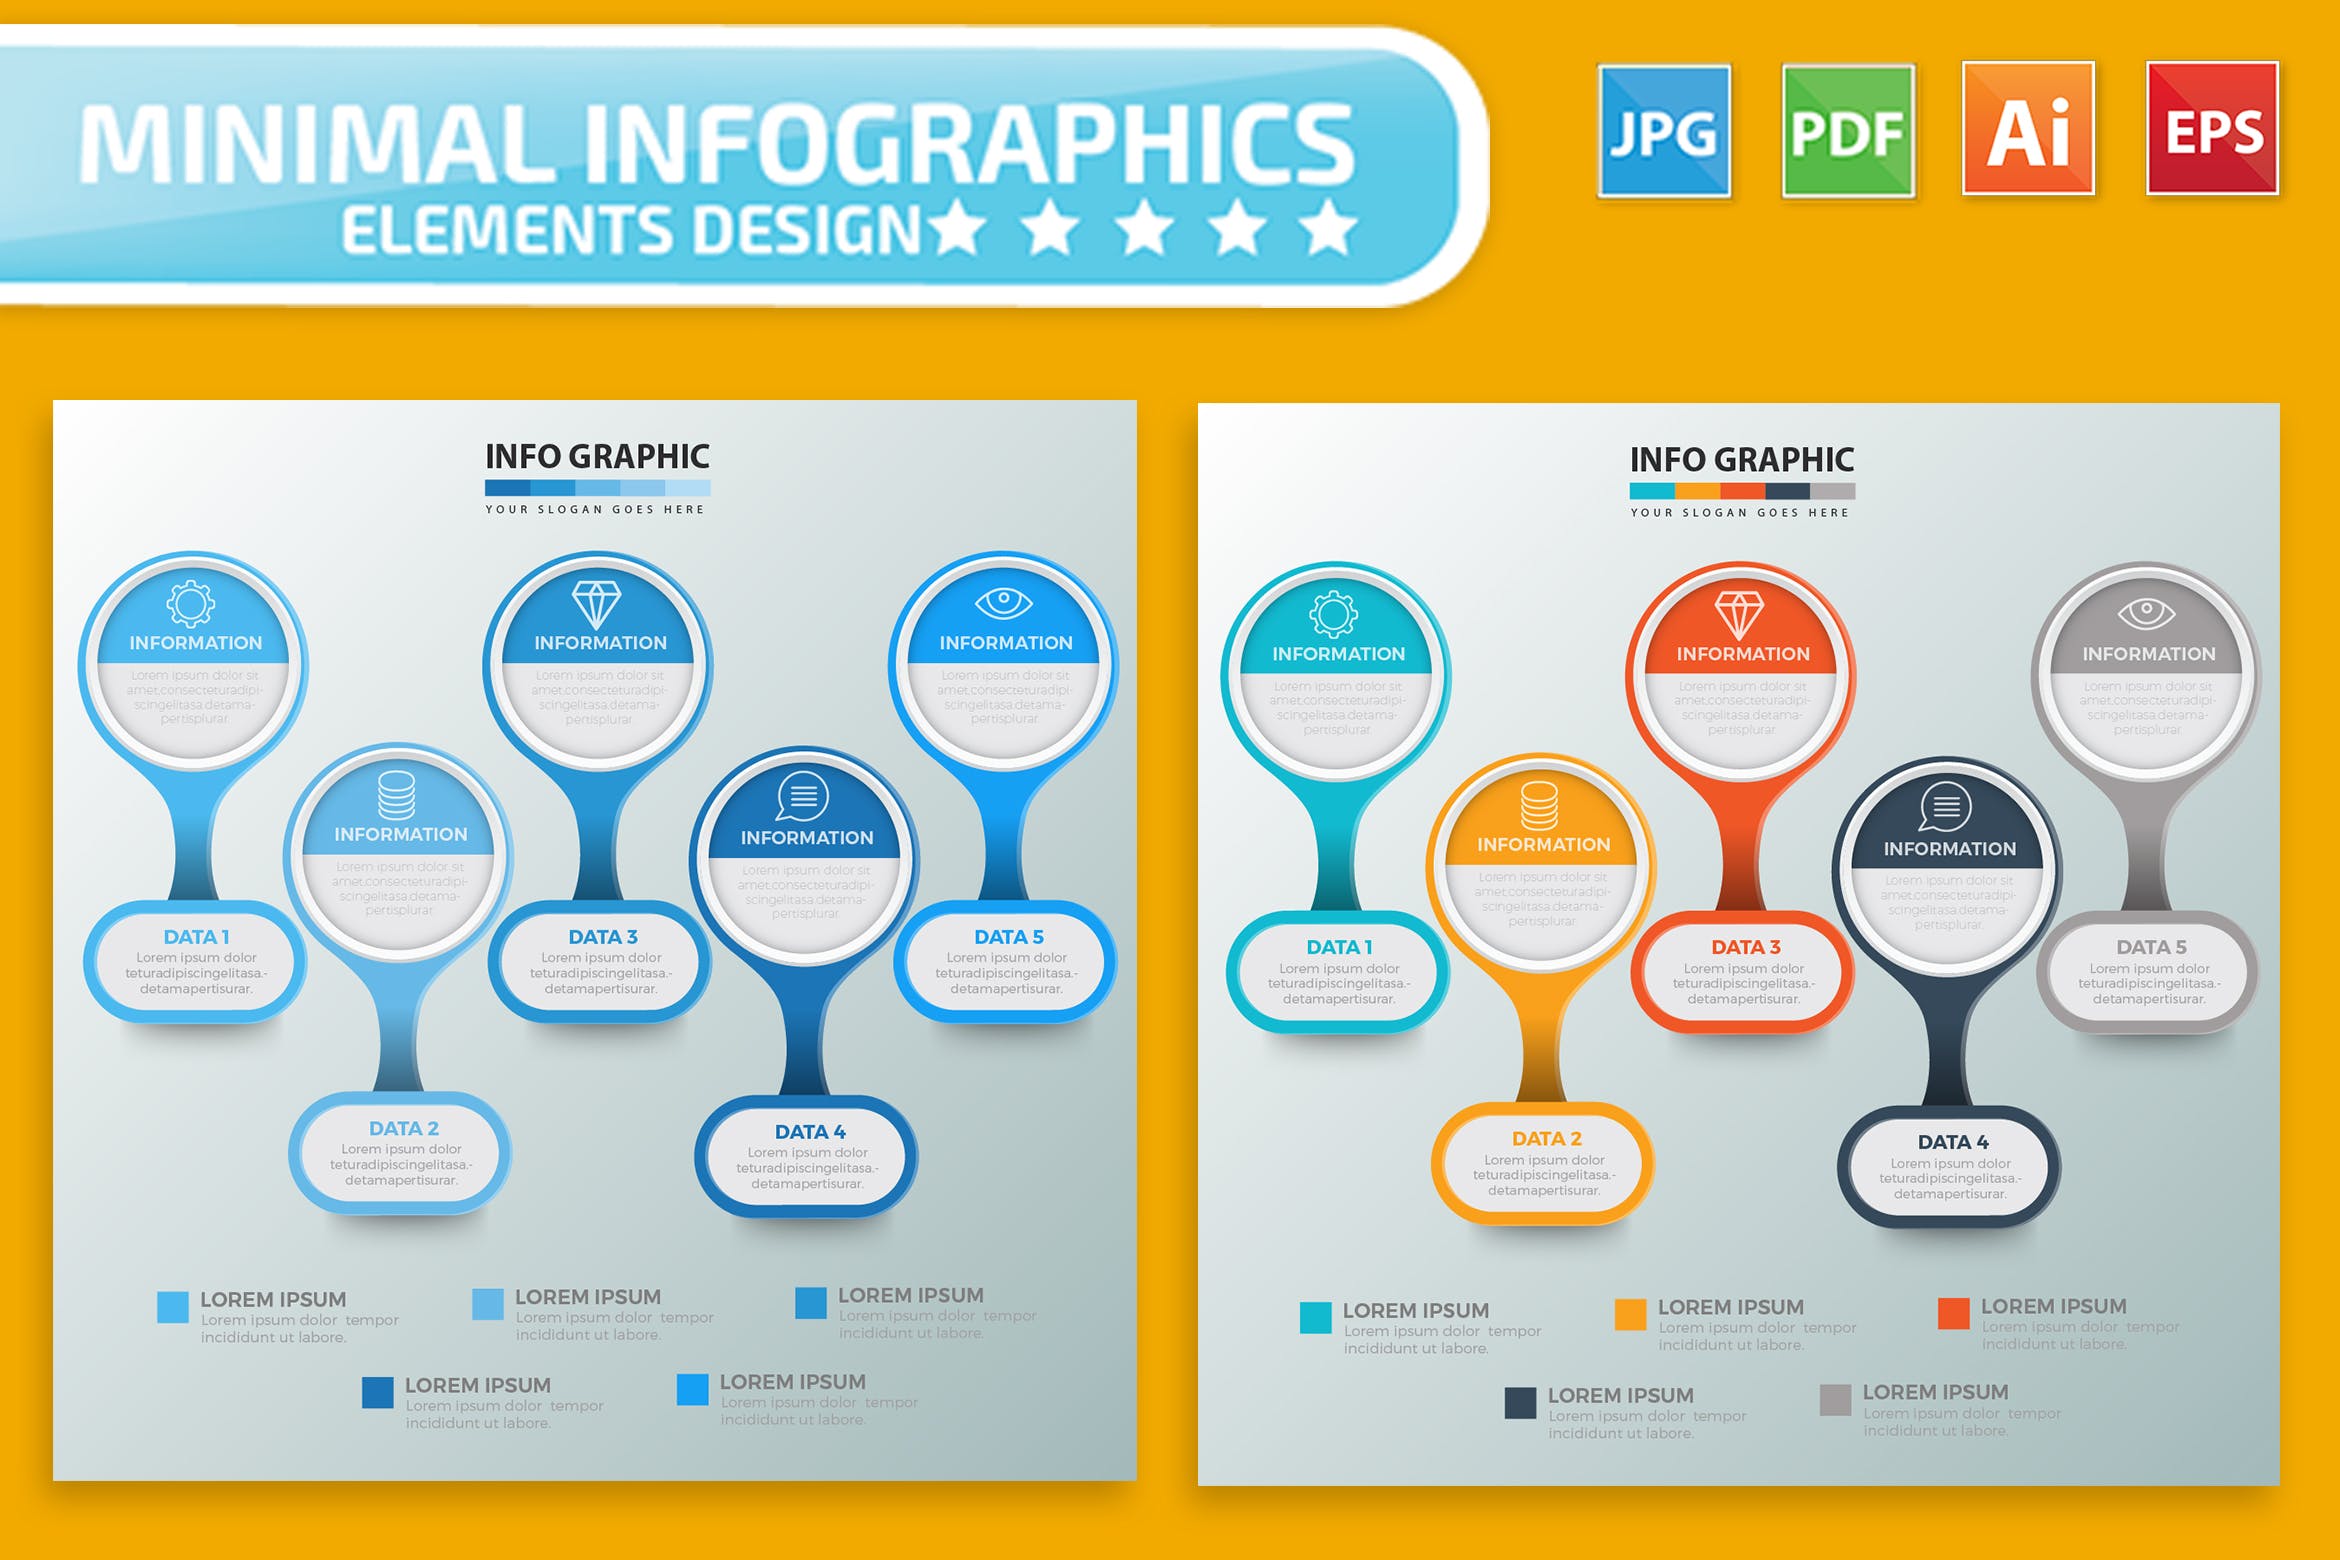 要点说明/重要特征信息图表矢量图形16设计素材网精选素材v2 Infographic Elements Design插图